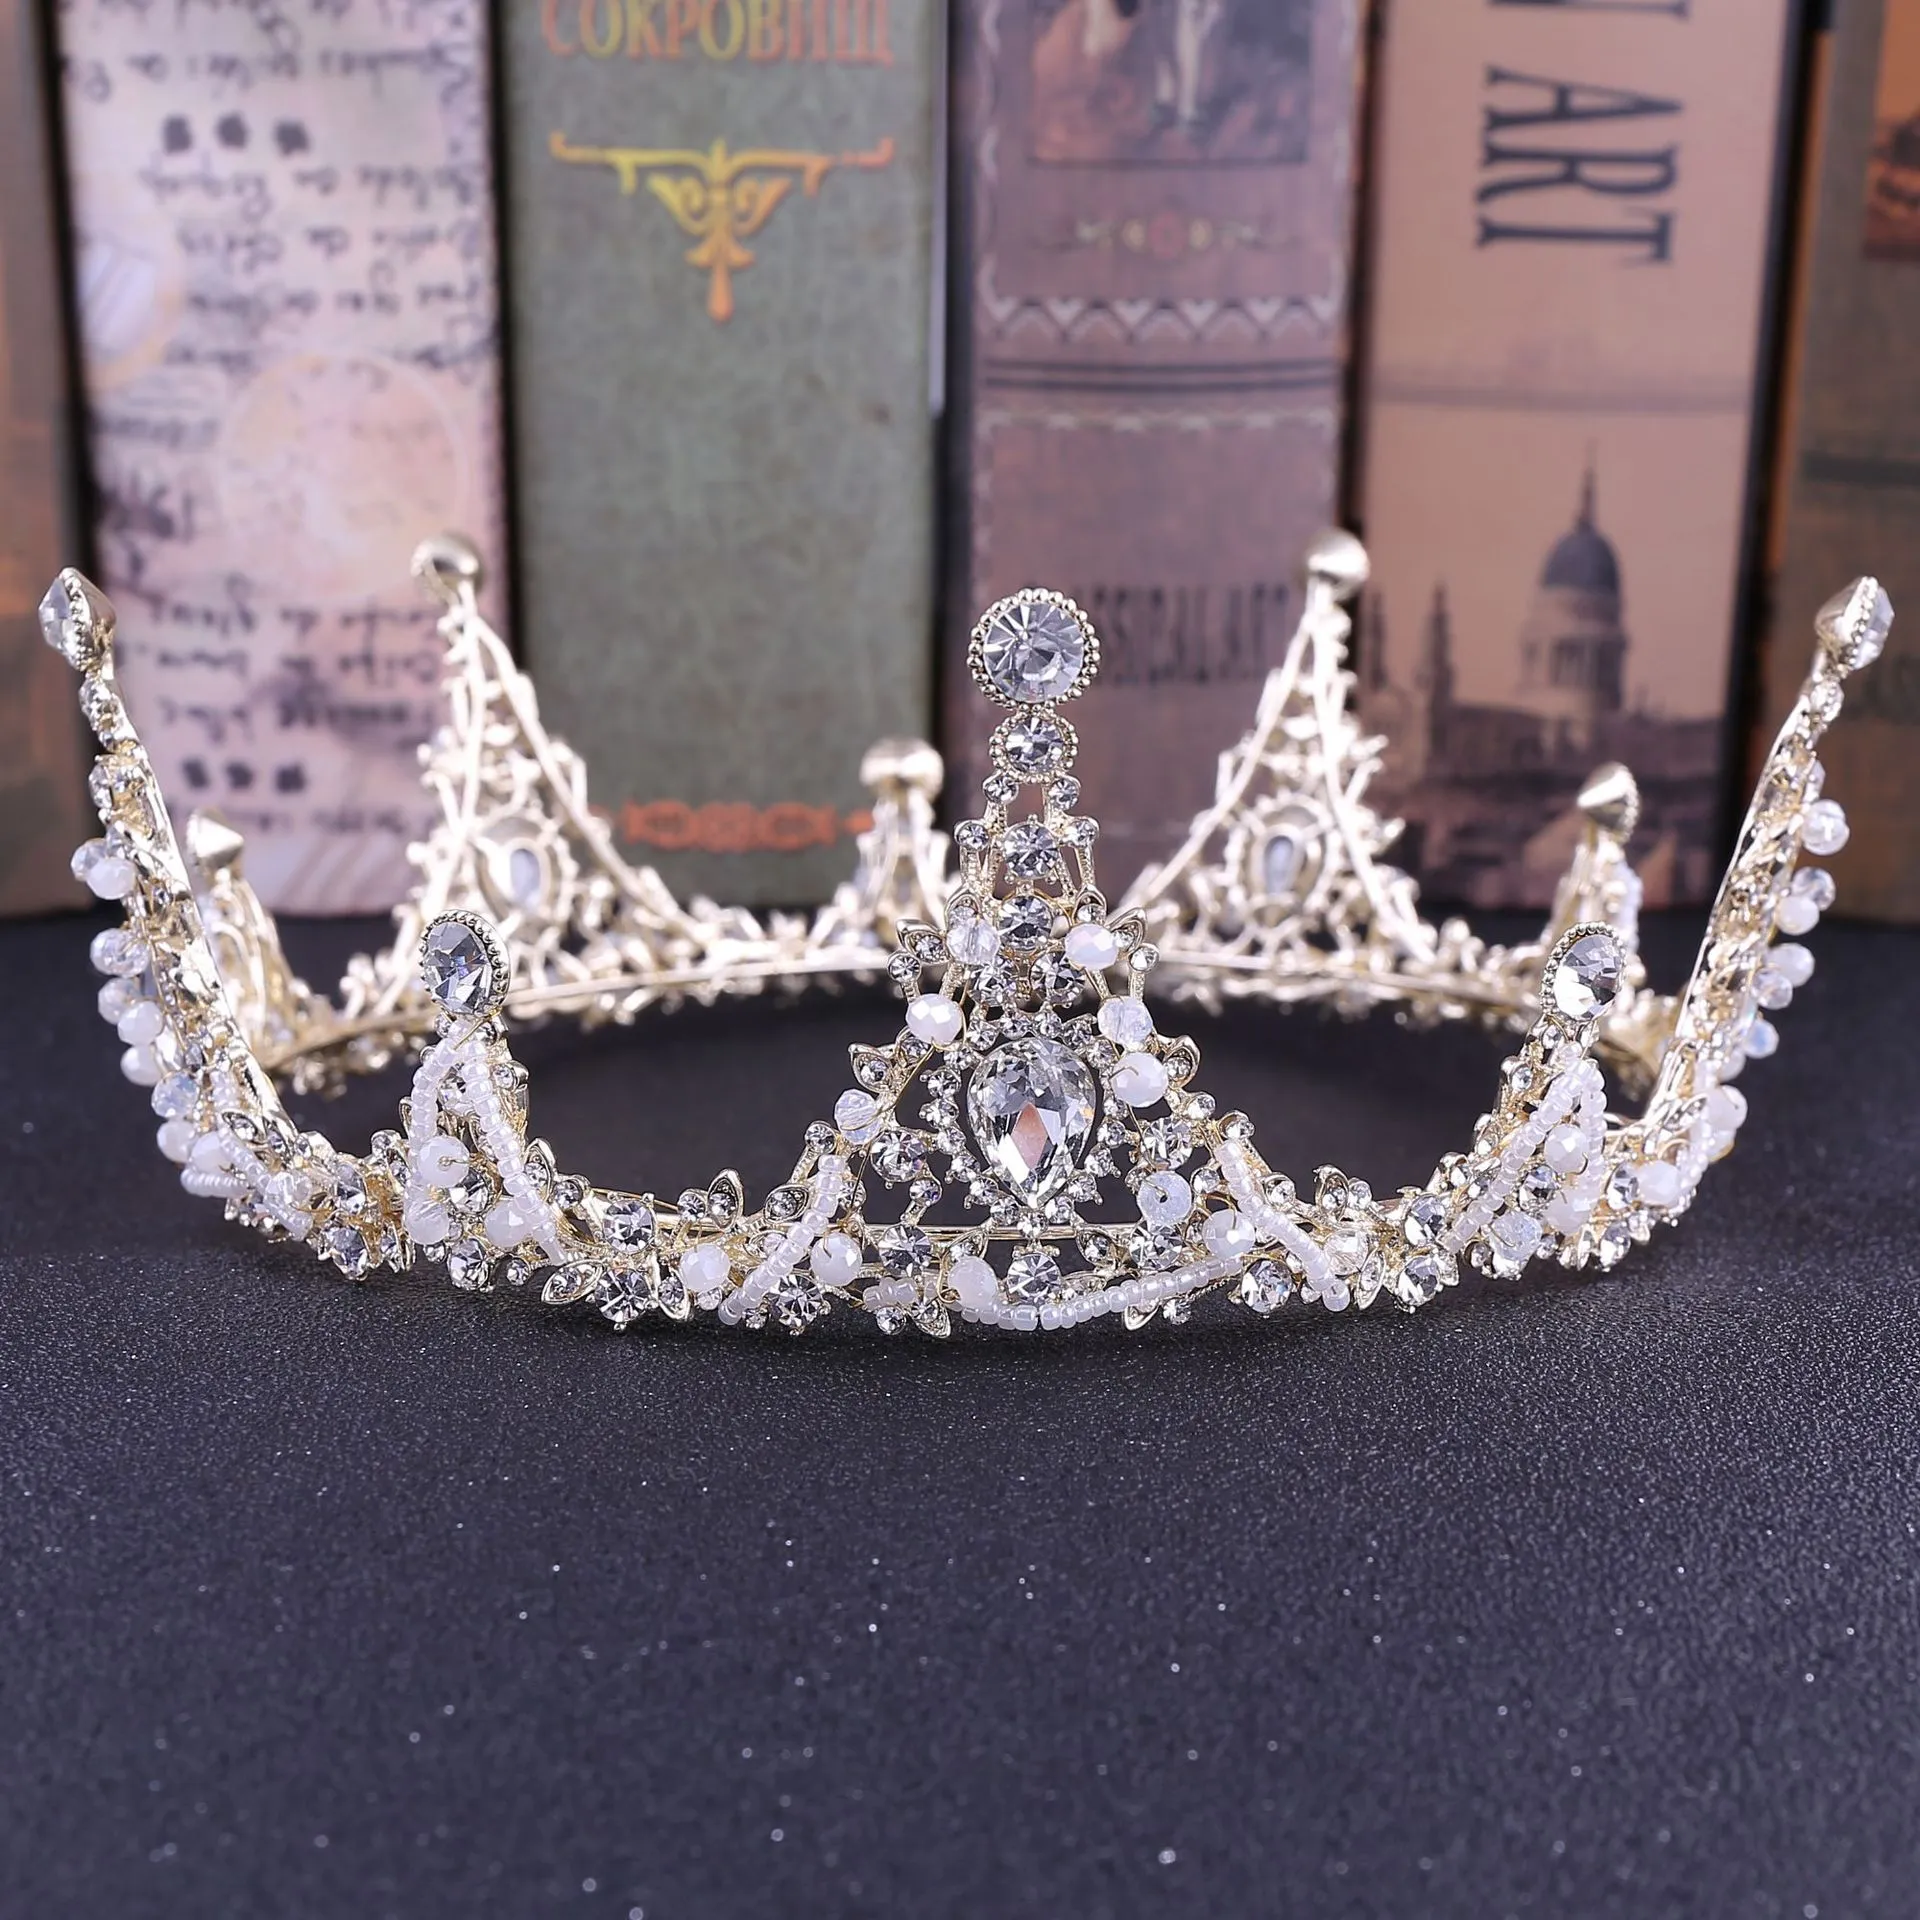 2021 Старинные барочные свадебные принципиальные аксессуары для принцессы / серебра красочные кристаллы принцессы потрясающие потрясающие свадьбы Tiaras и Crowns12147